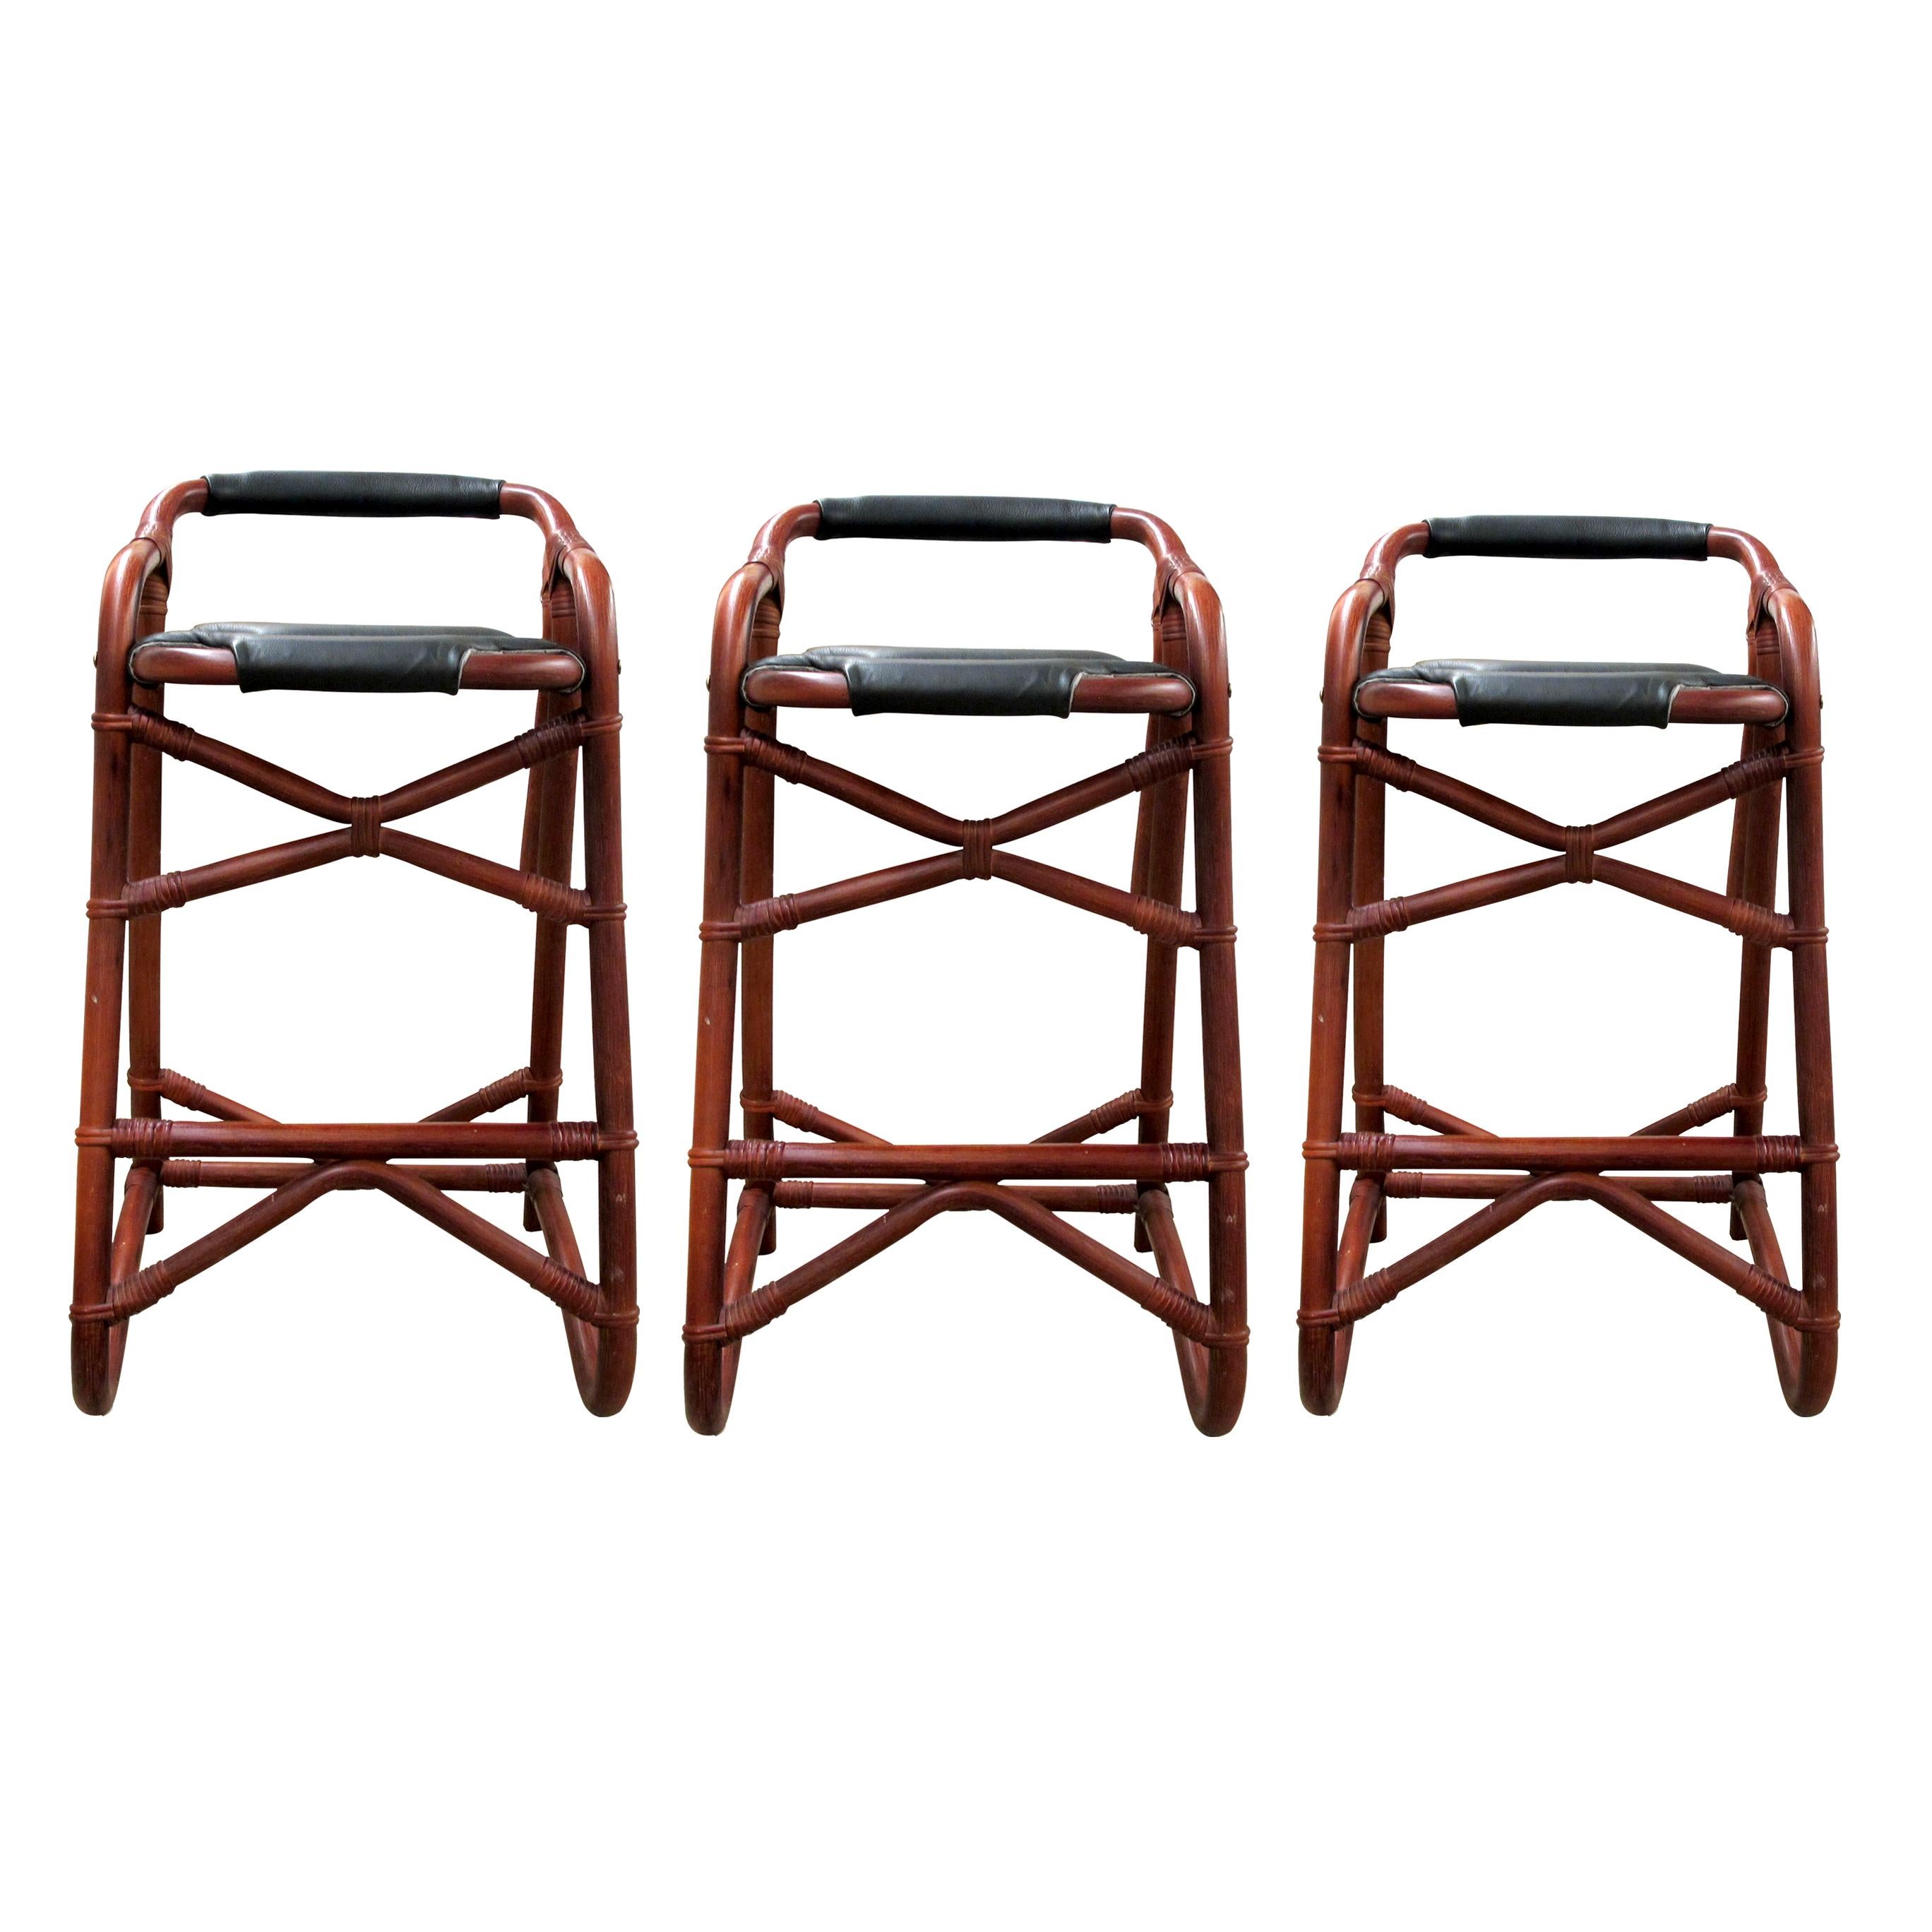 Set aus drei französischen Riviera-Barhockern aus den 1970er Jahren mit einem stabilen Bambusgestell. Die Hocker sind mit schwarzem Leder gepolstert, die Sitzpads sind für zusätzlichen Komfort gepolstert. Die Bambusrahmen sind sehr gut verarbeitet,